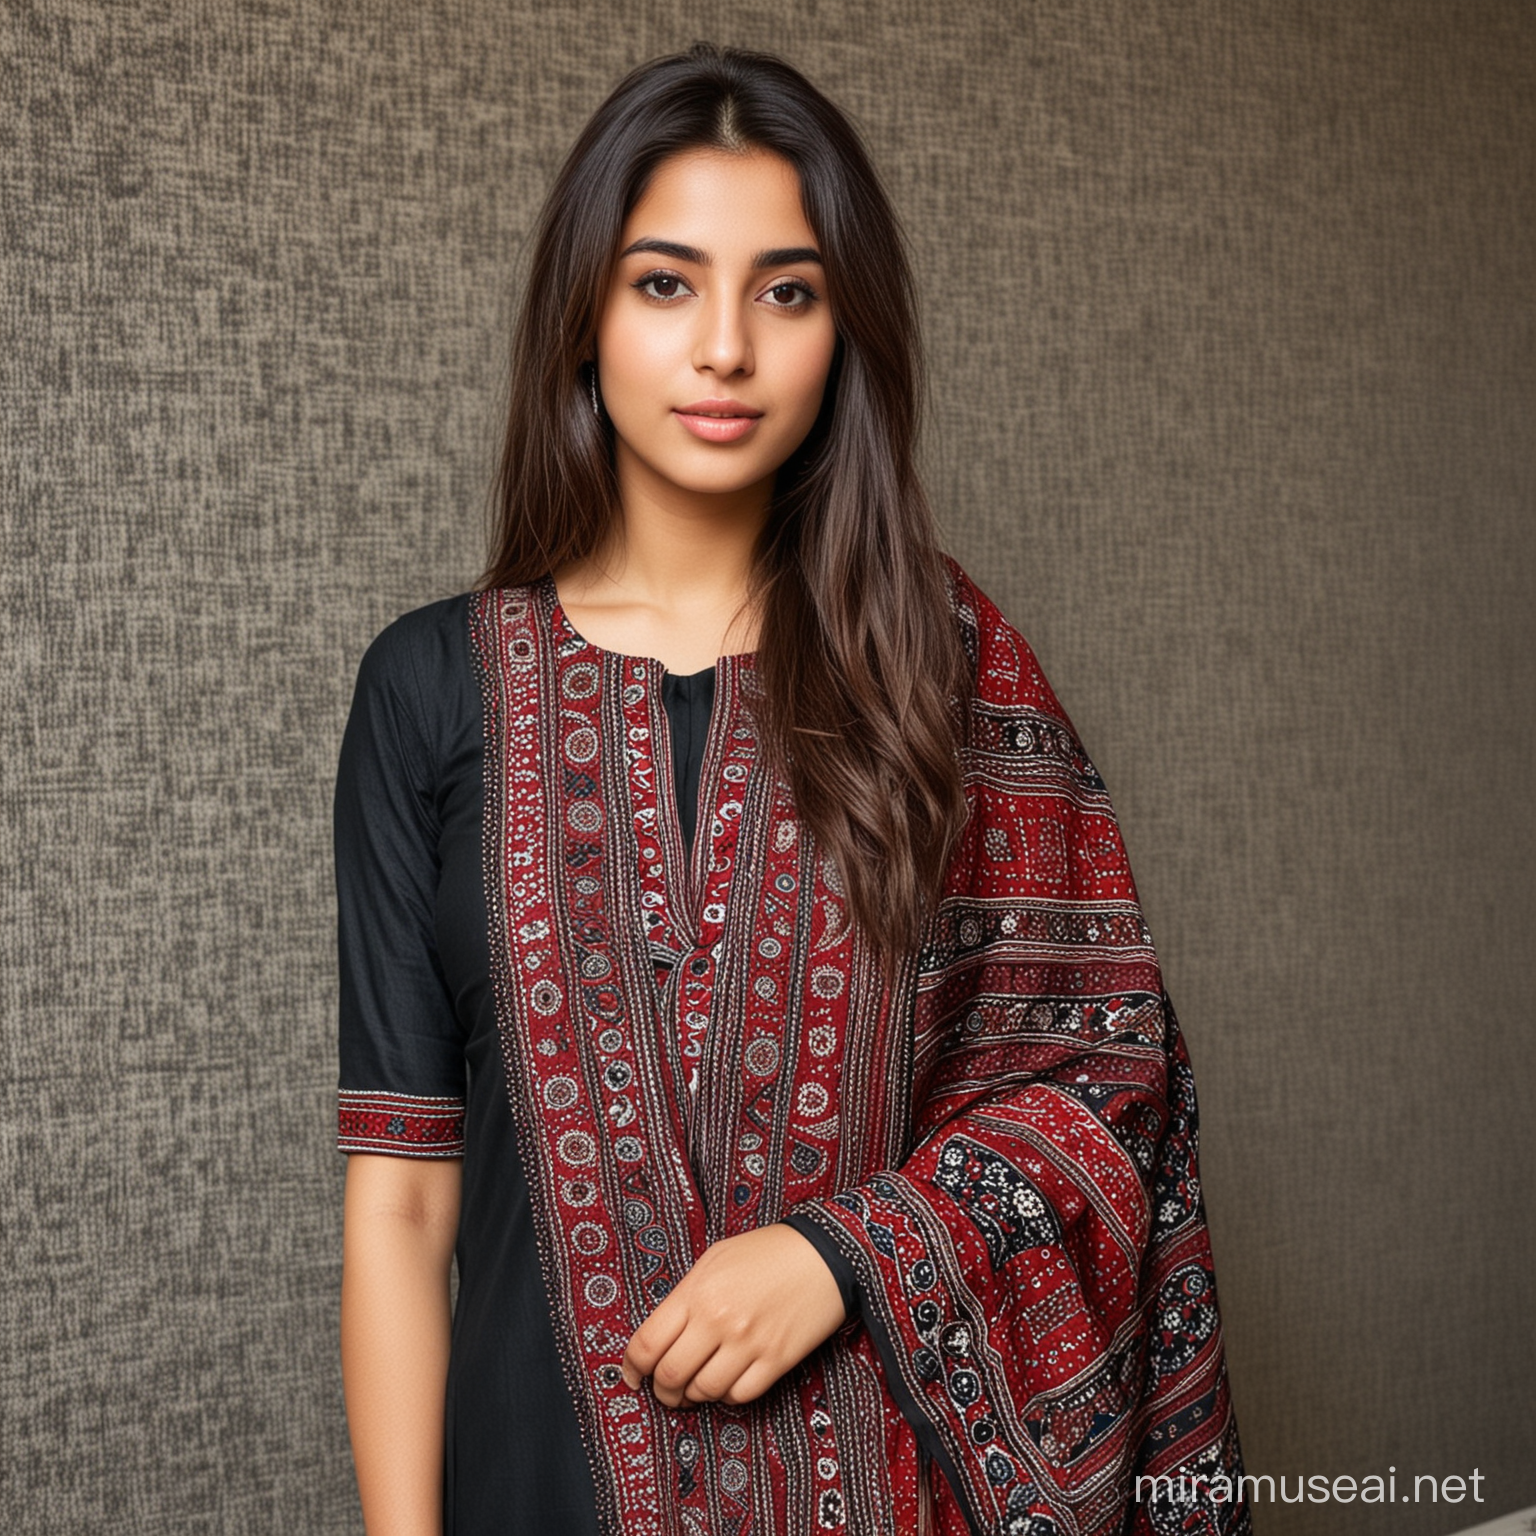 Beautiful Sindhi girl wearing ajrak